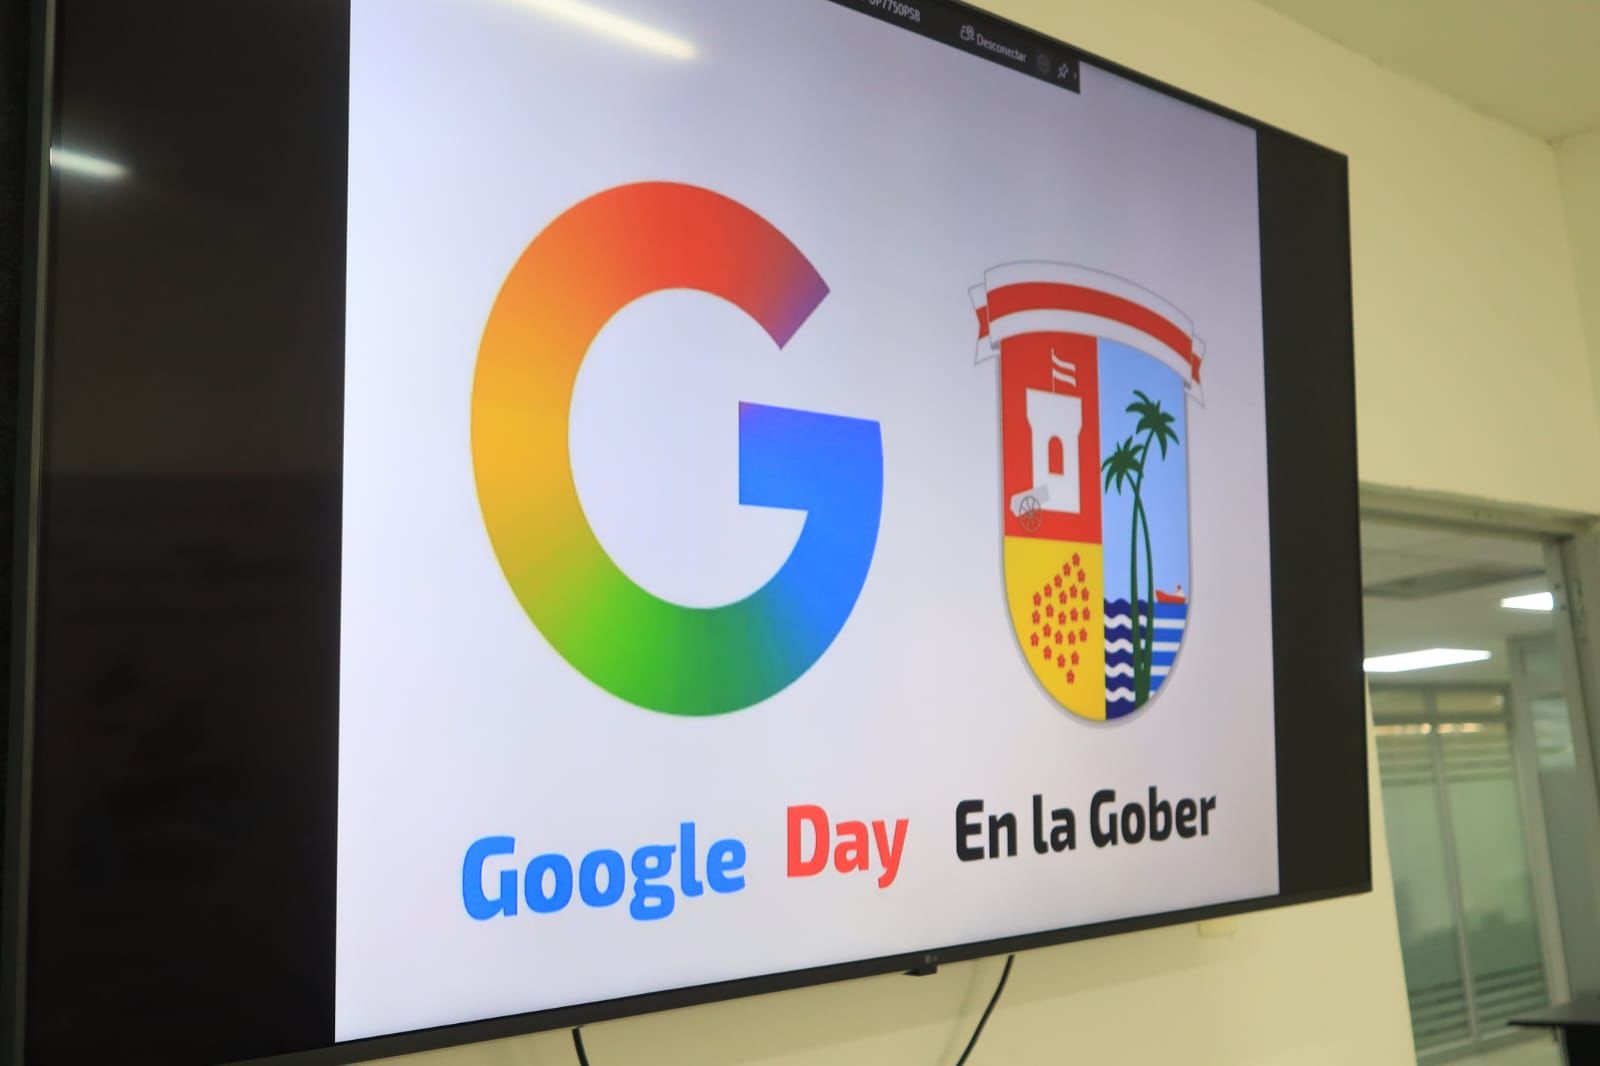 Gobernación del Atlántico concreta reuniones con Google para optimizar sus funciones y servicios